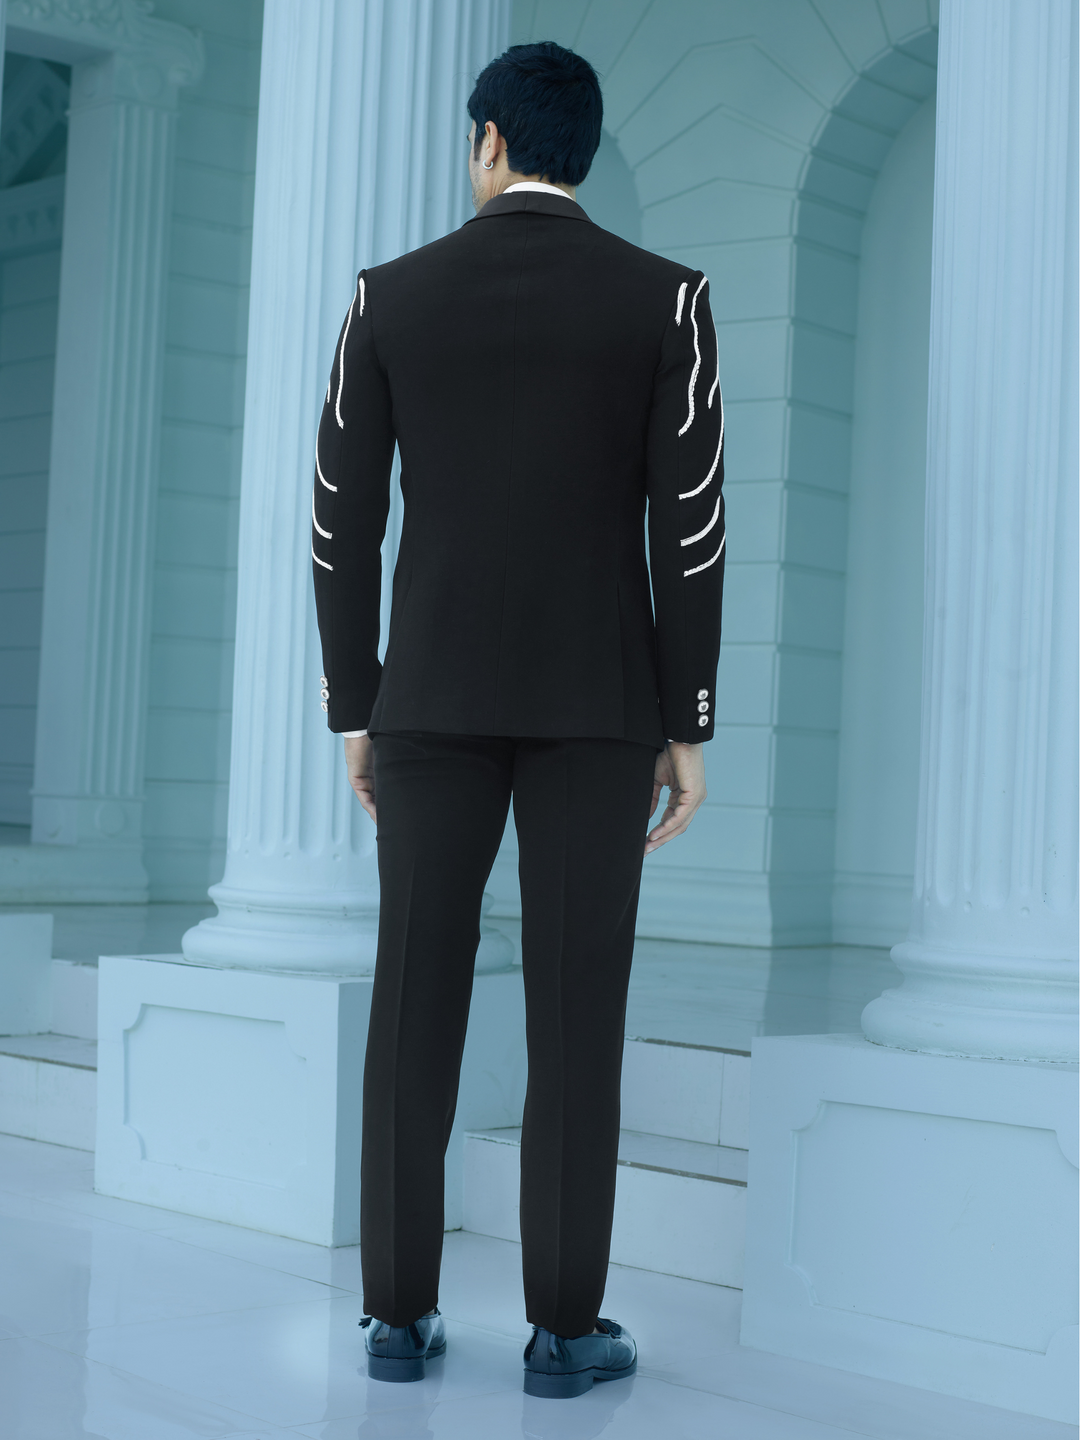 Bold Black Embellished Suit